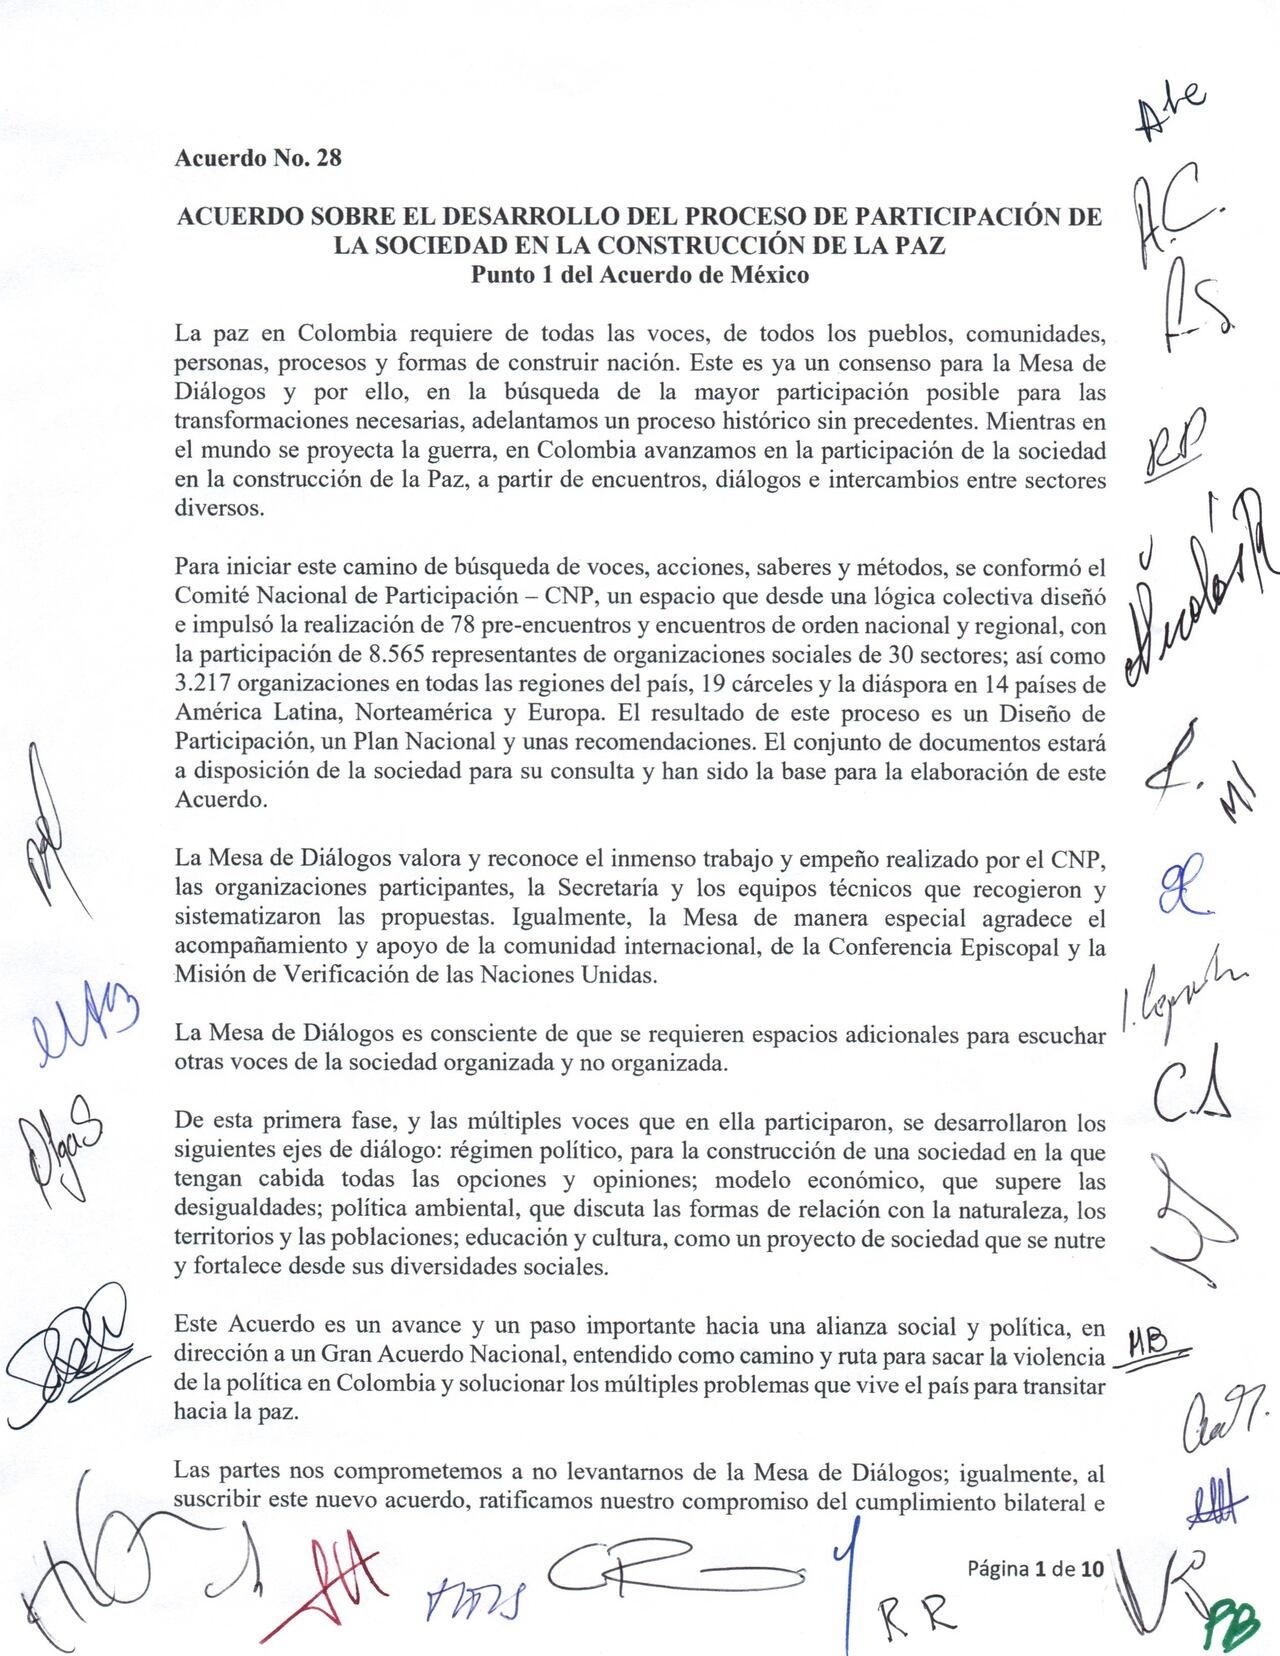 Description: Primer página del Acuerdo sobre el proceso de participación de la sociedad civil en la construcción de la paz entre Colombia y el ELN.